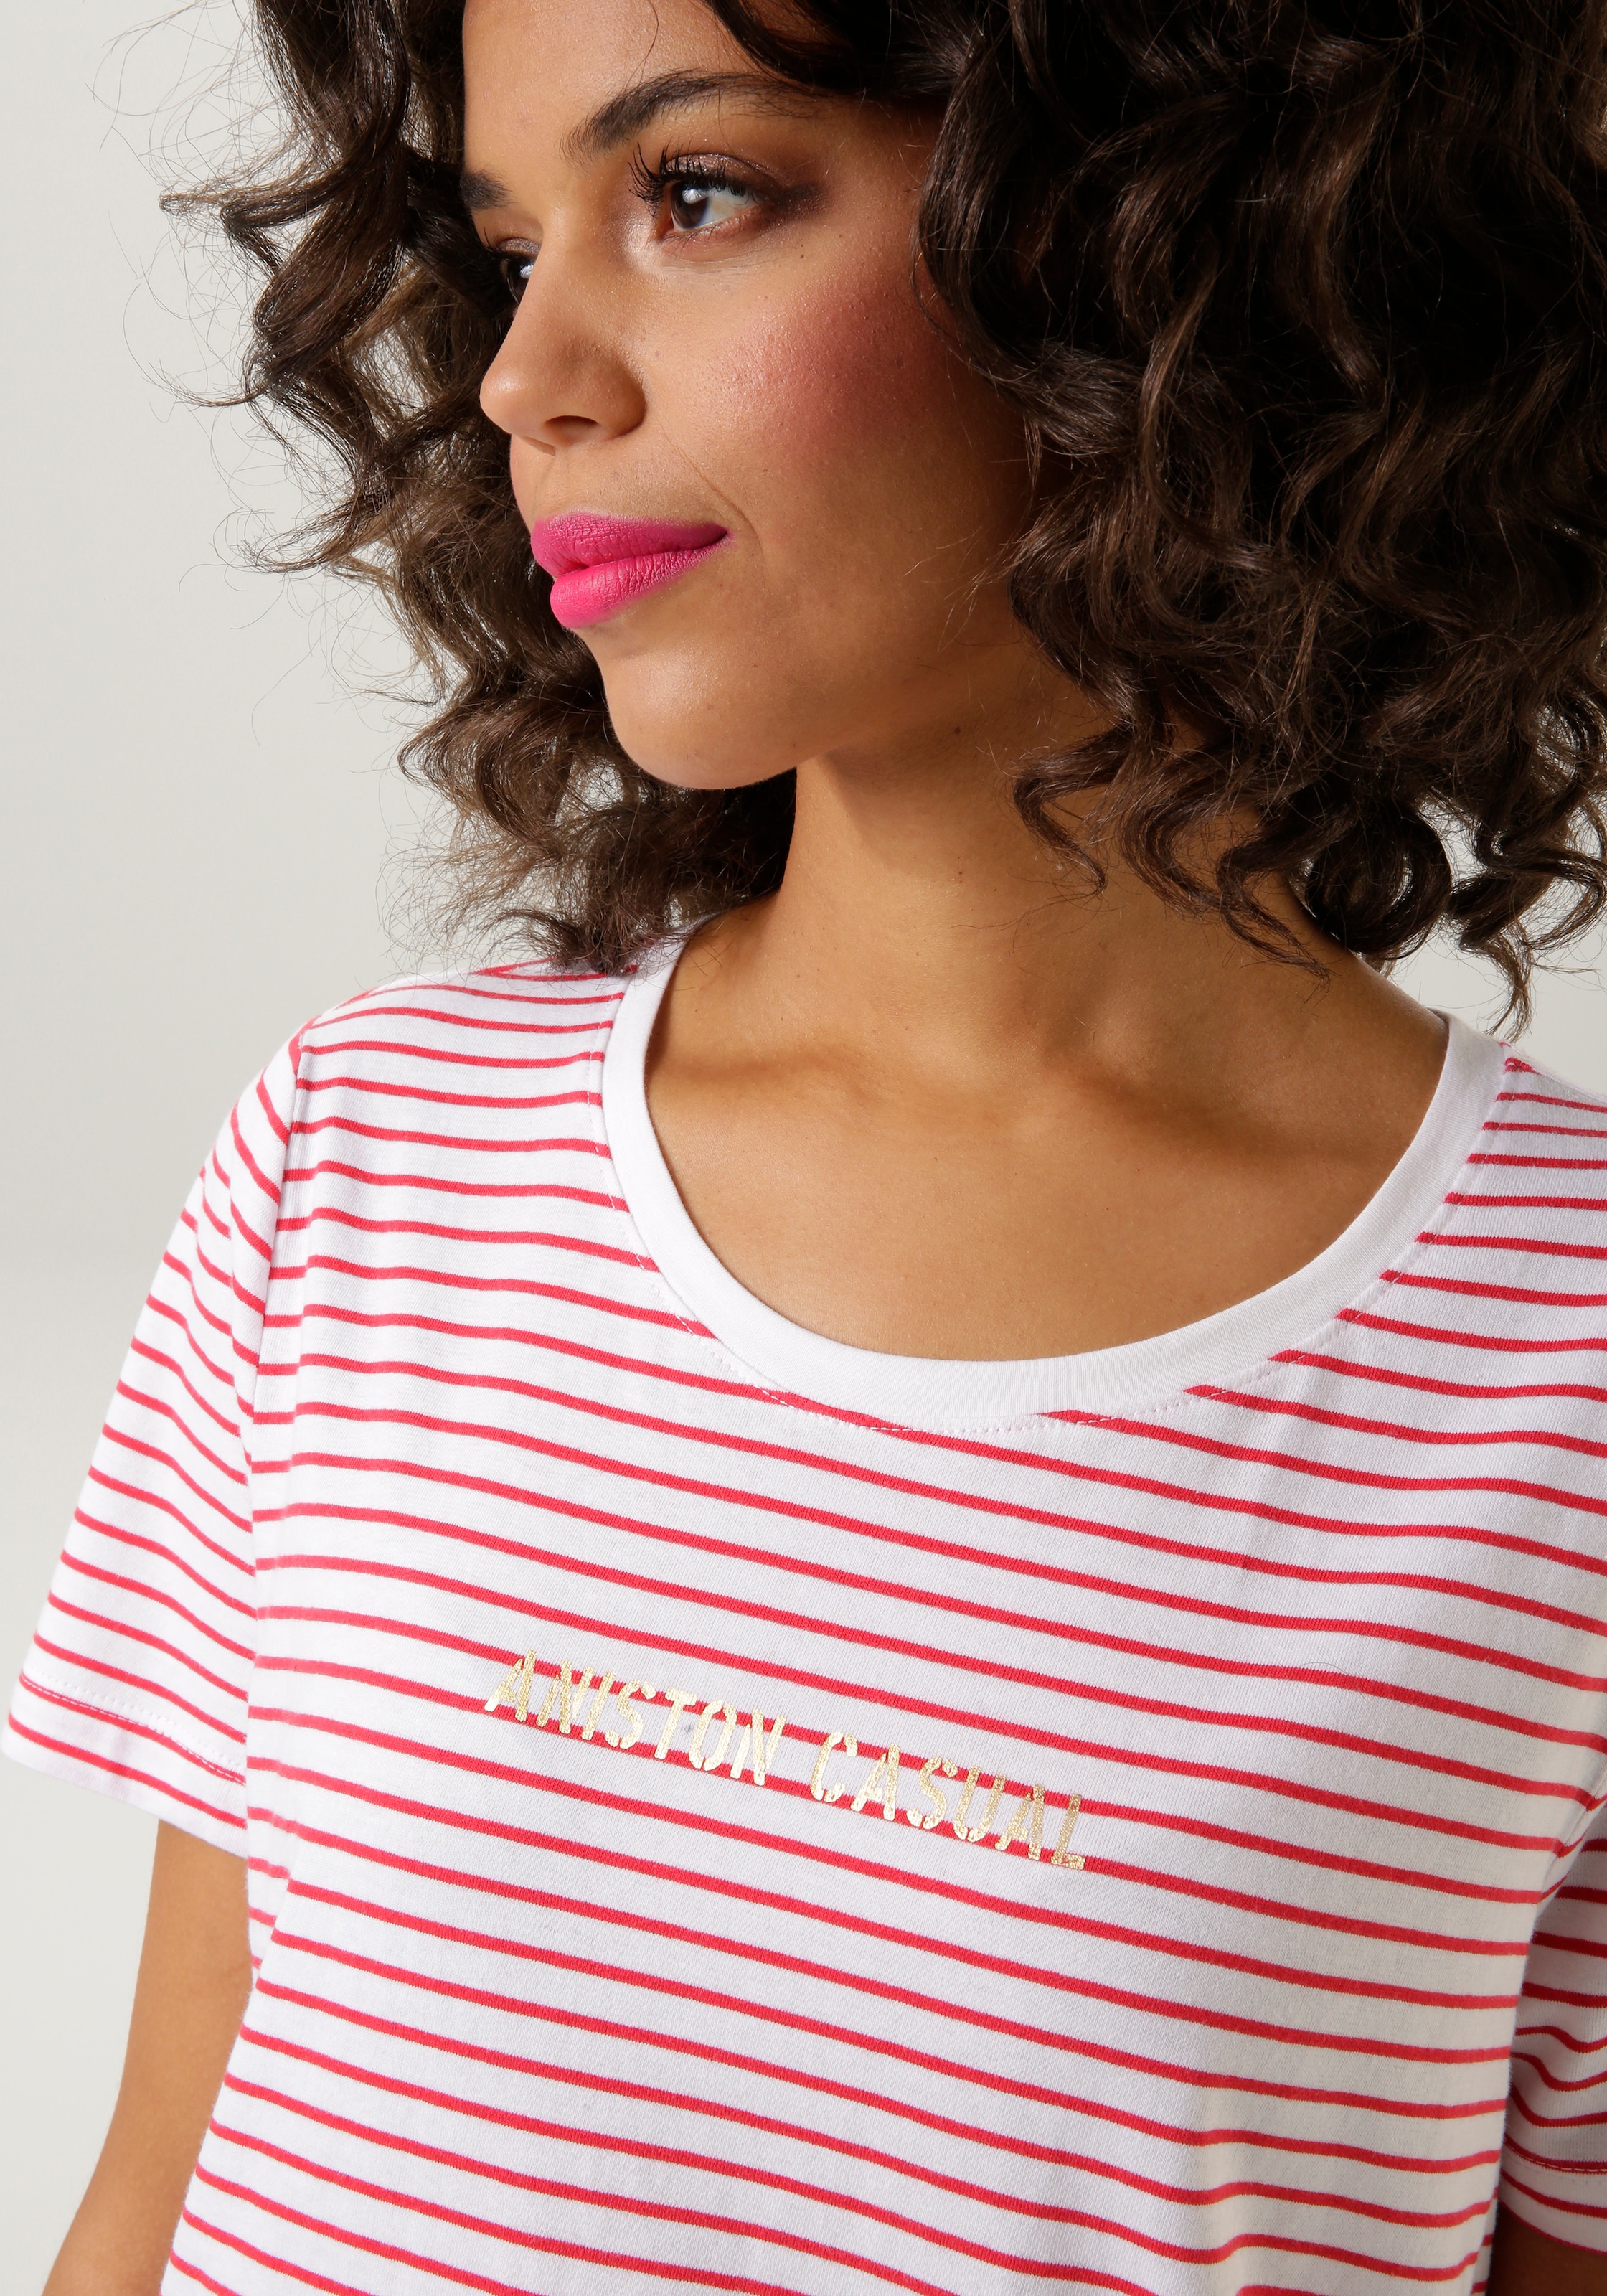 Aniston CASUAL T-Shirt, im Streifen-Dessin - NEUE KOLLEKTION